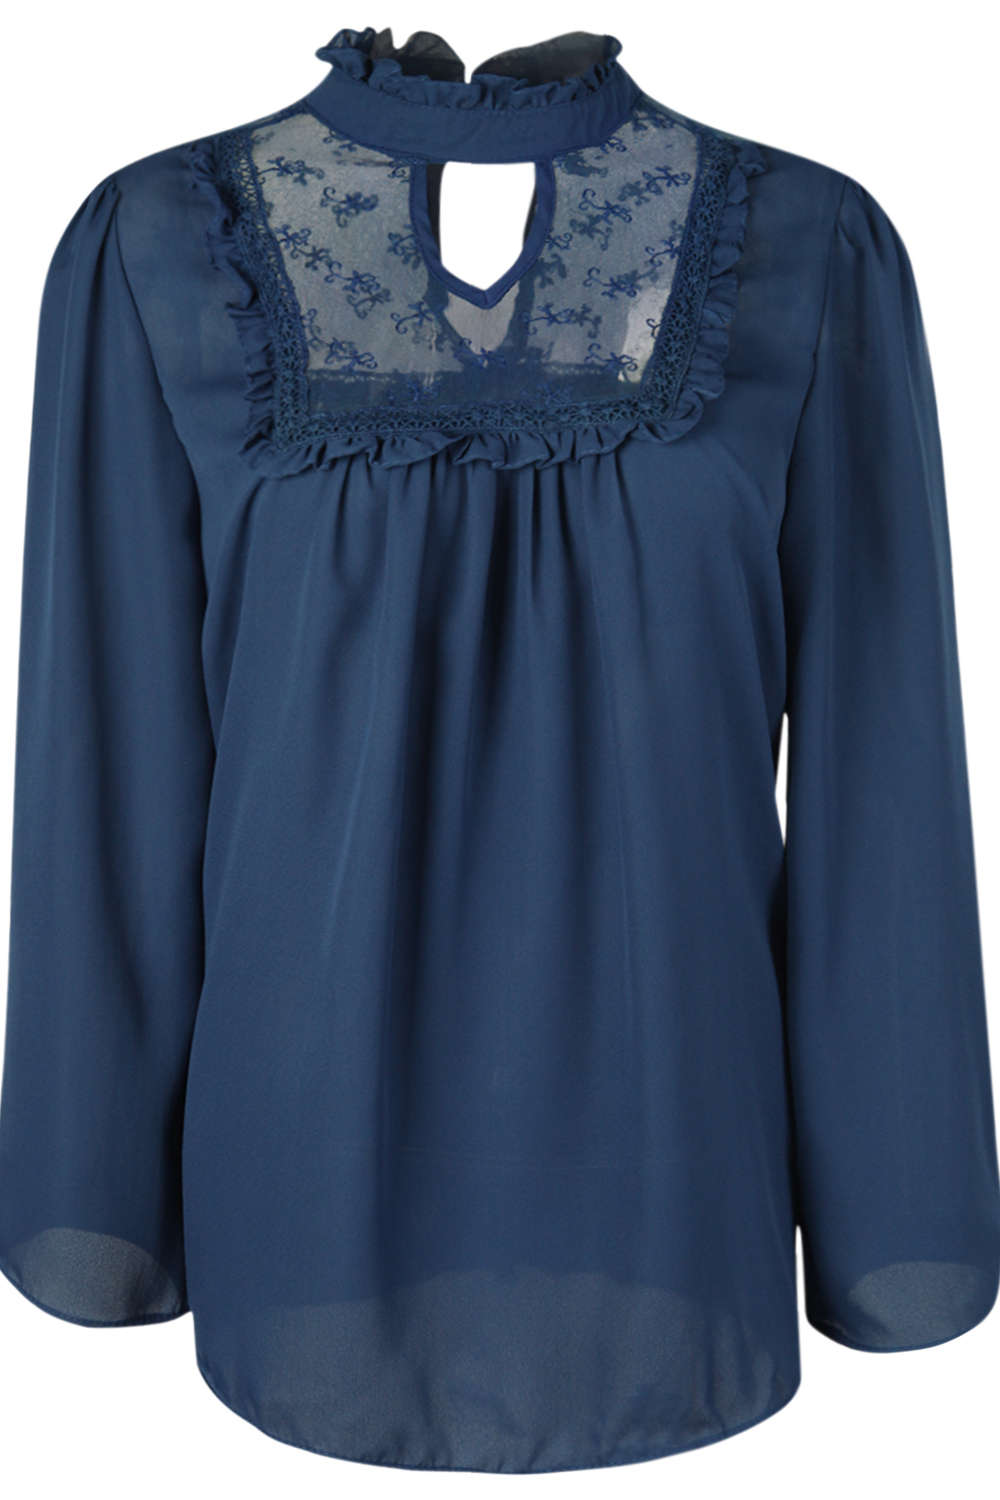 Iyasson Woman Long Sleeve Lace Stitching Chiffon Shirt